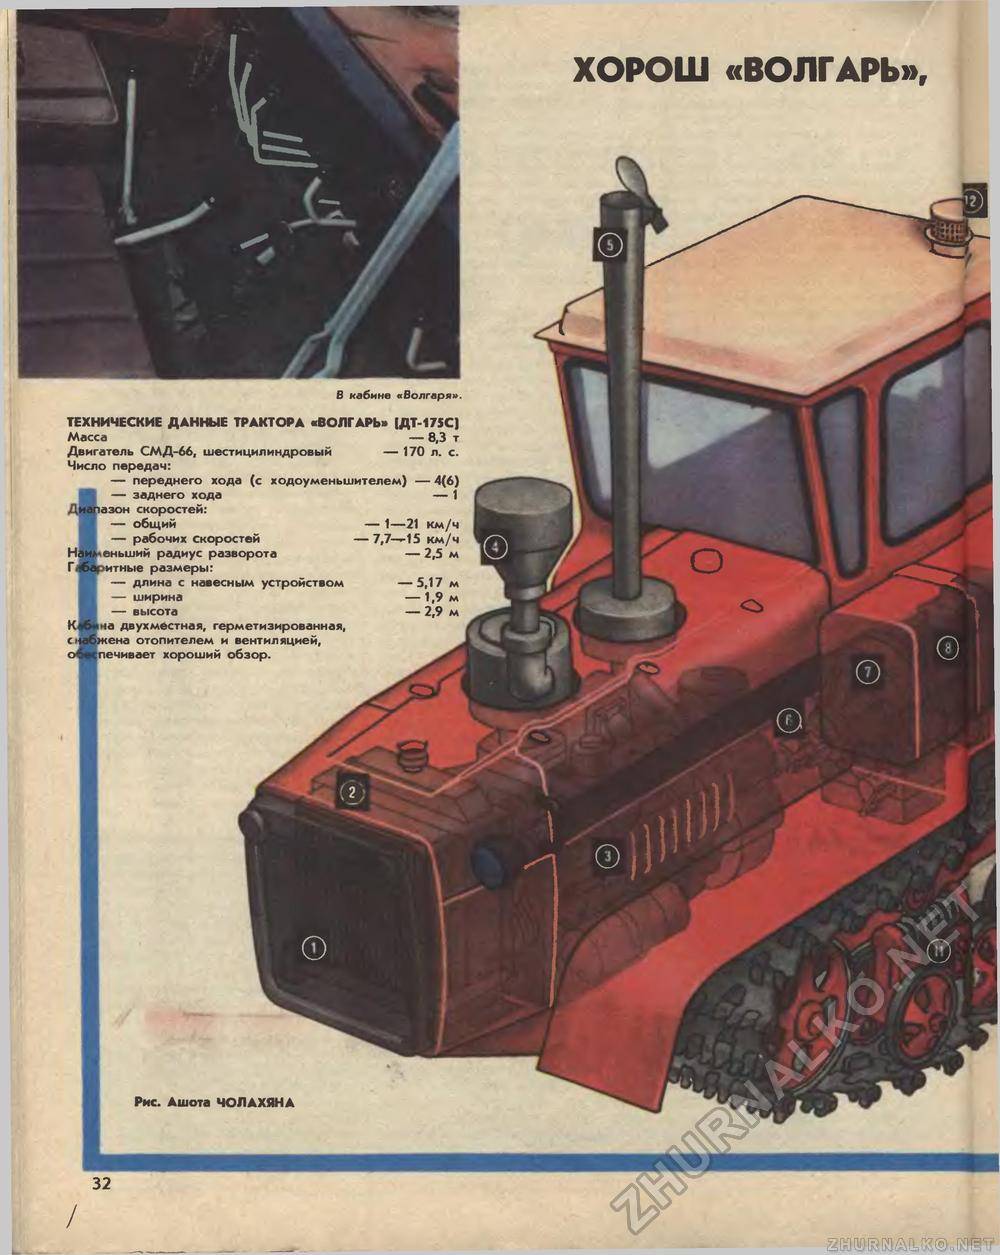 Трактор дт 175 волгарь: технические характеристики, видео, аналоги